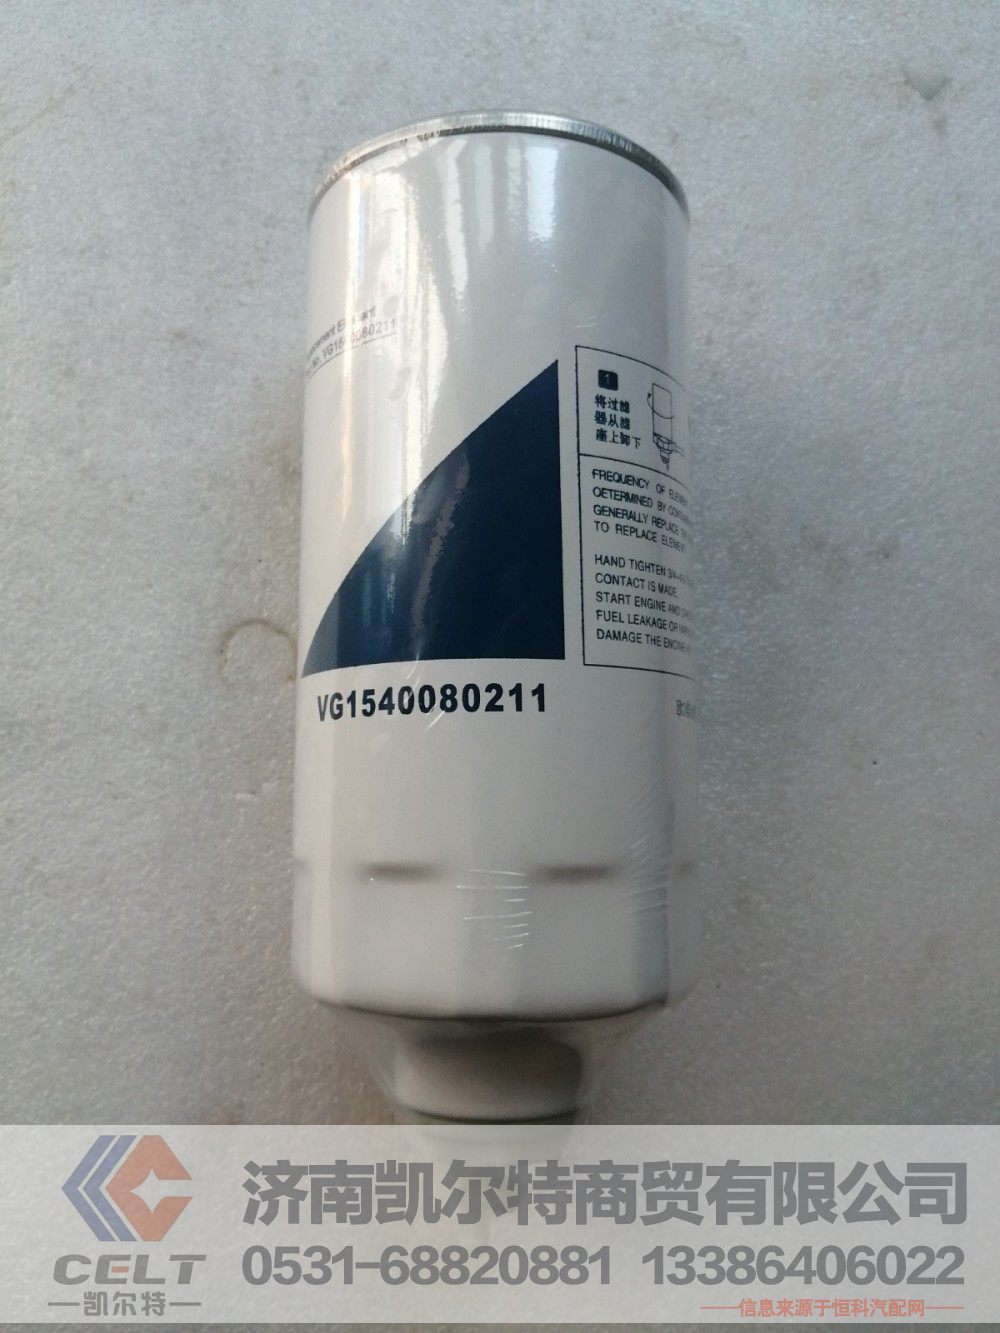 VG1540080211,燃油滤清器,济南凯尔特商贸有限公司